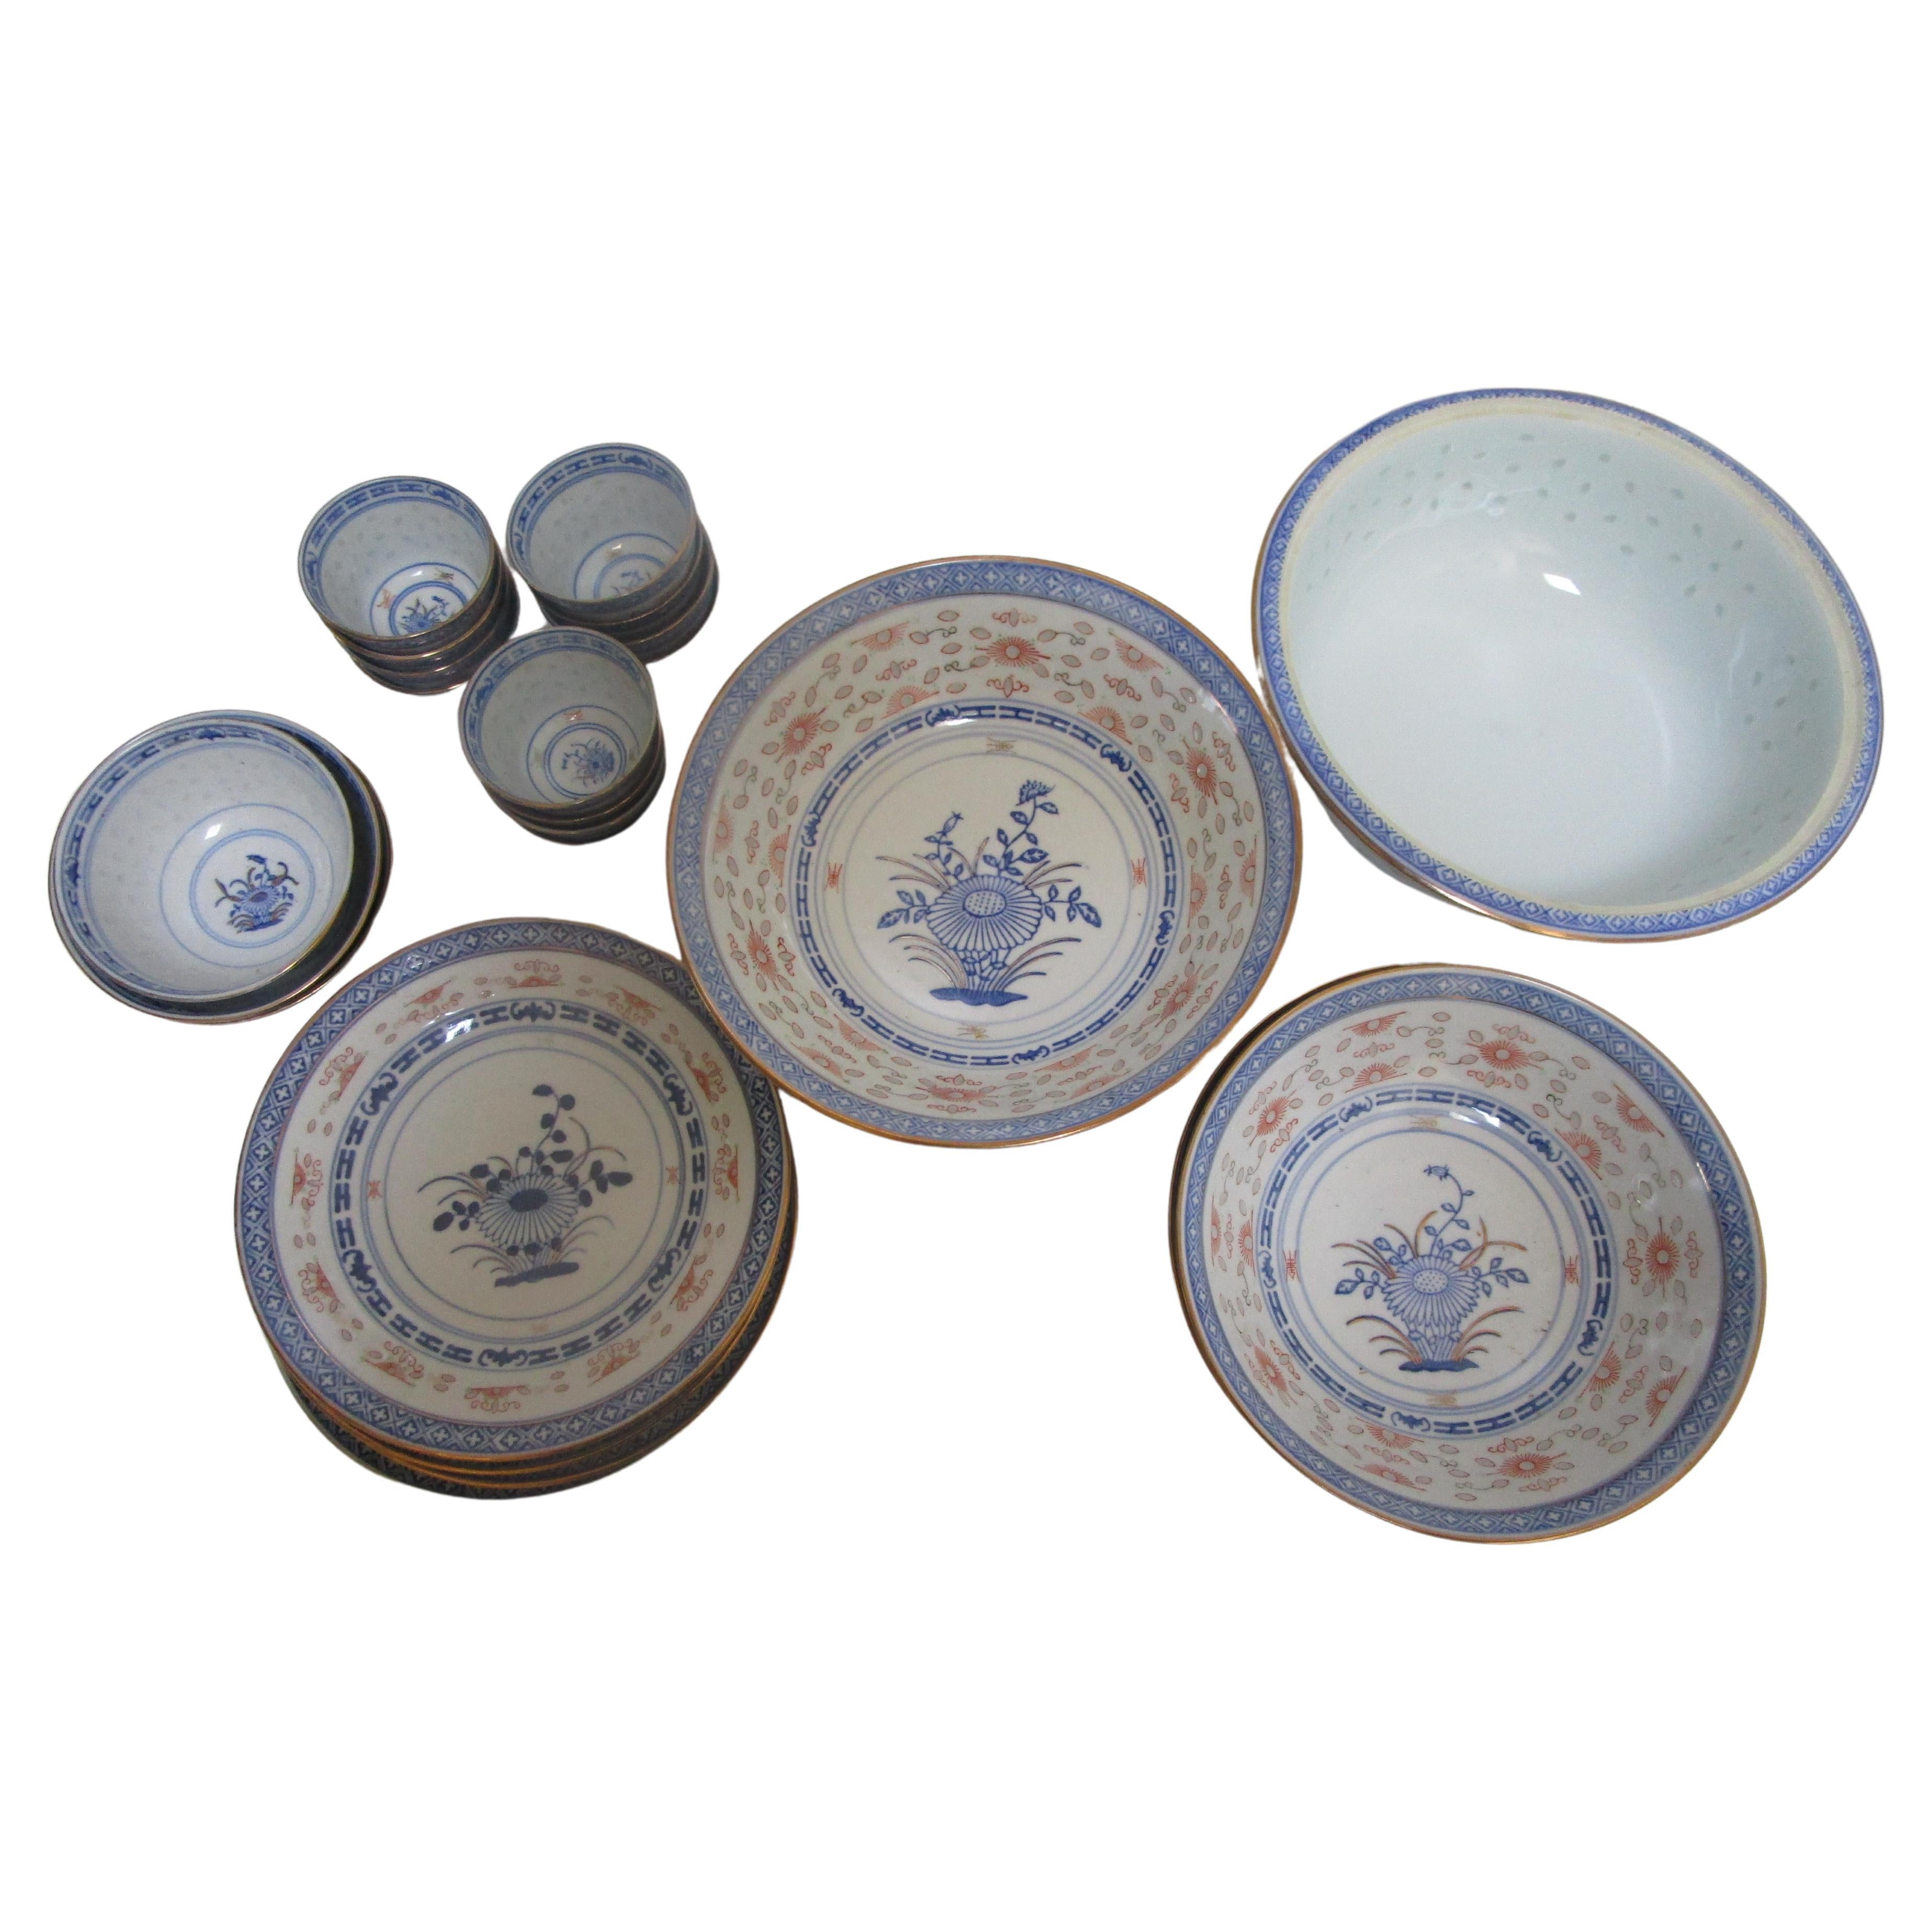 Bols de service, tasses à thé en porcelaine bleue et blanche à fleurs de lotus dorées de Jingdezhen